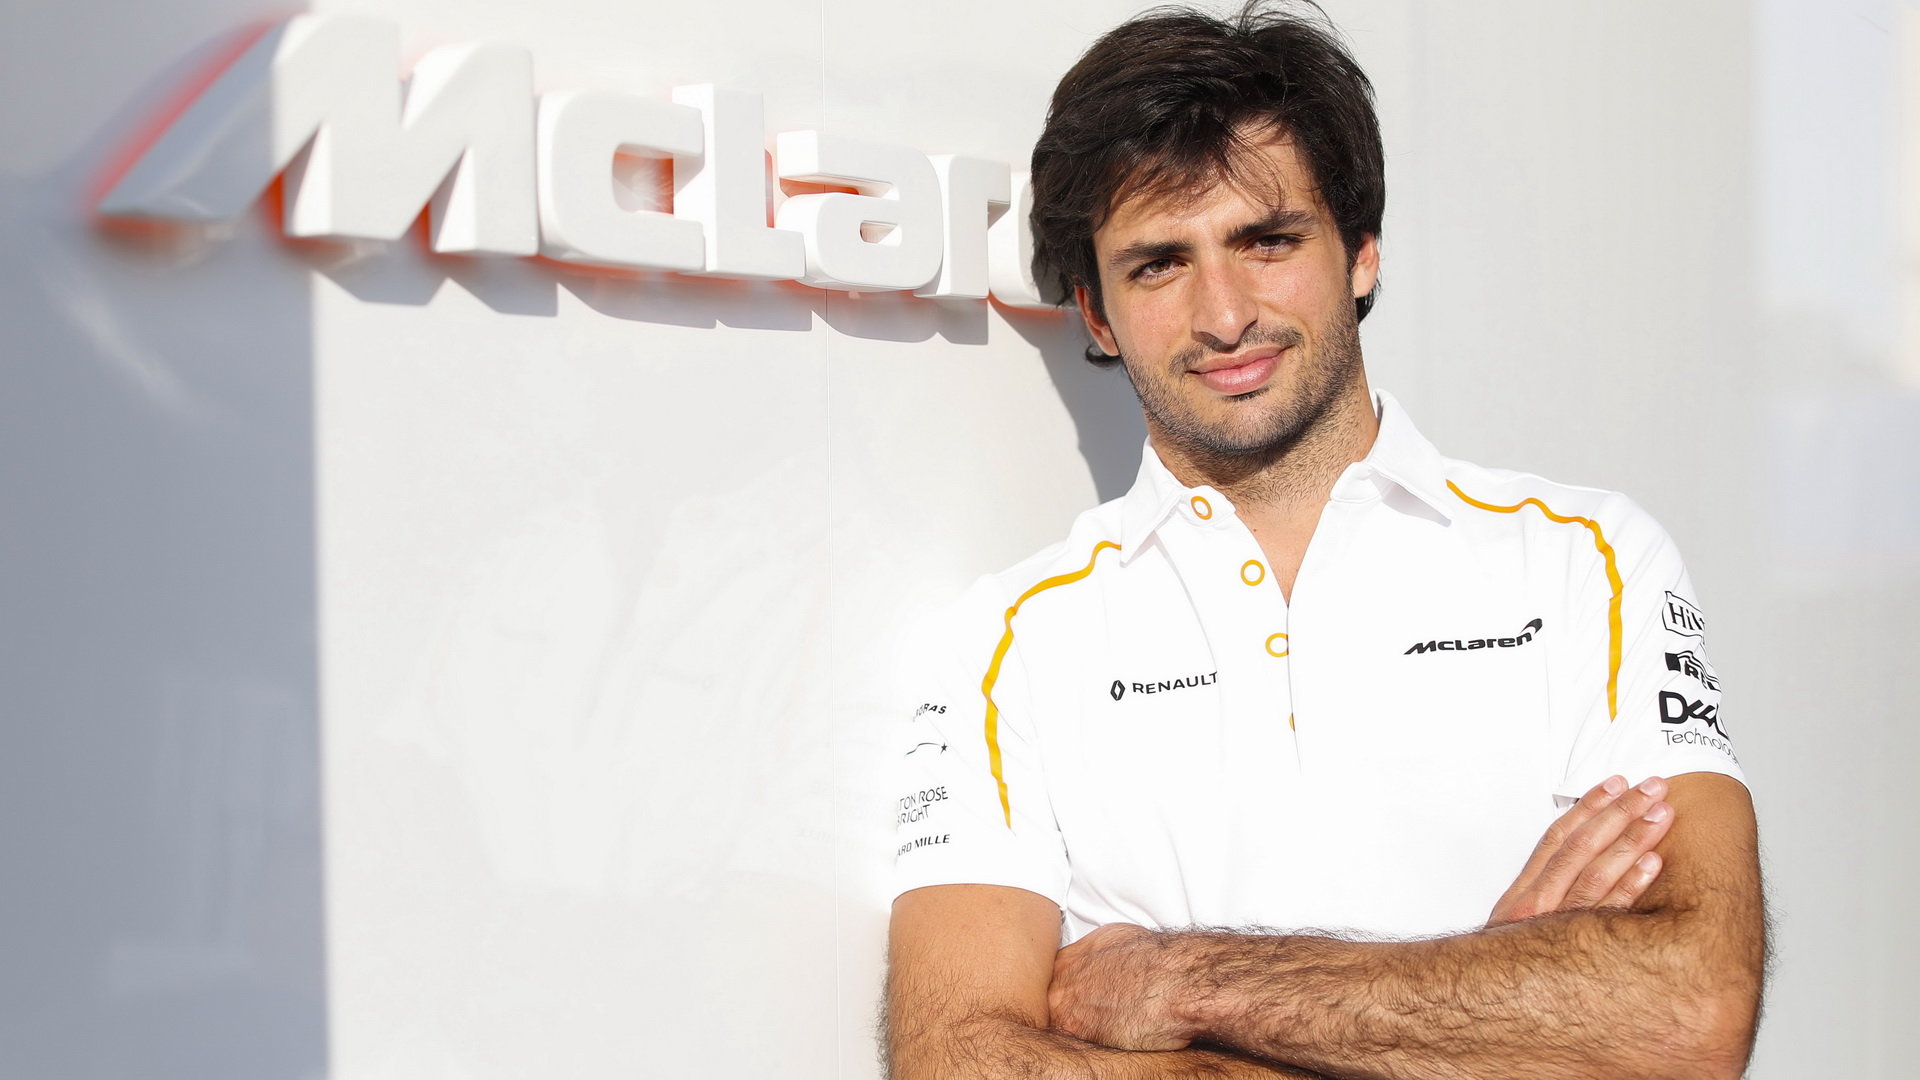 Minulý týden Carlos poprvé testoval s McLarenem, za který bude příští rok závodit